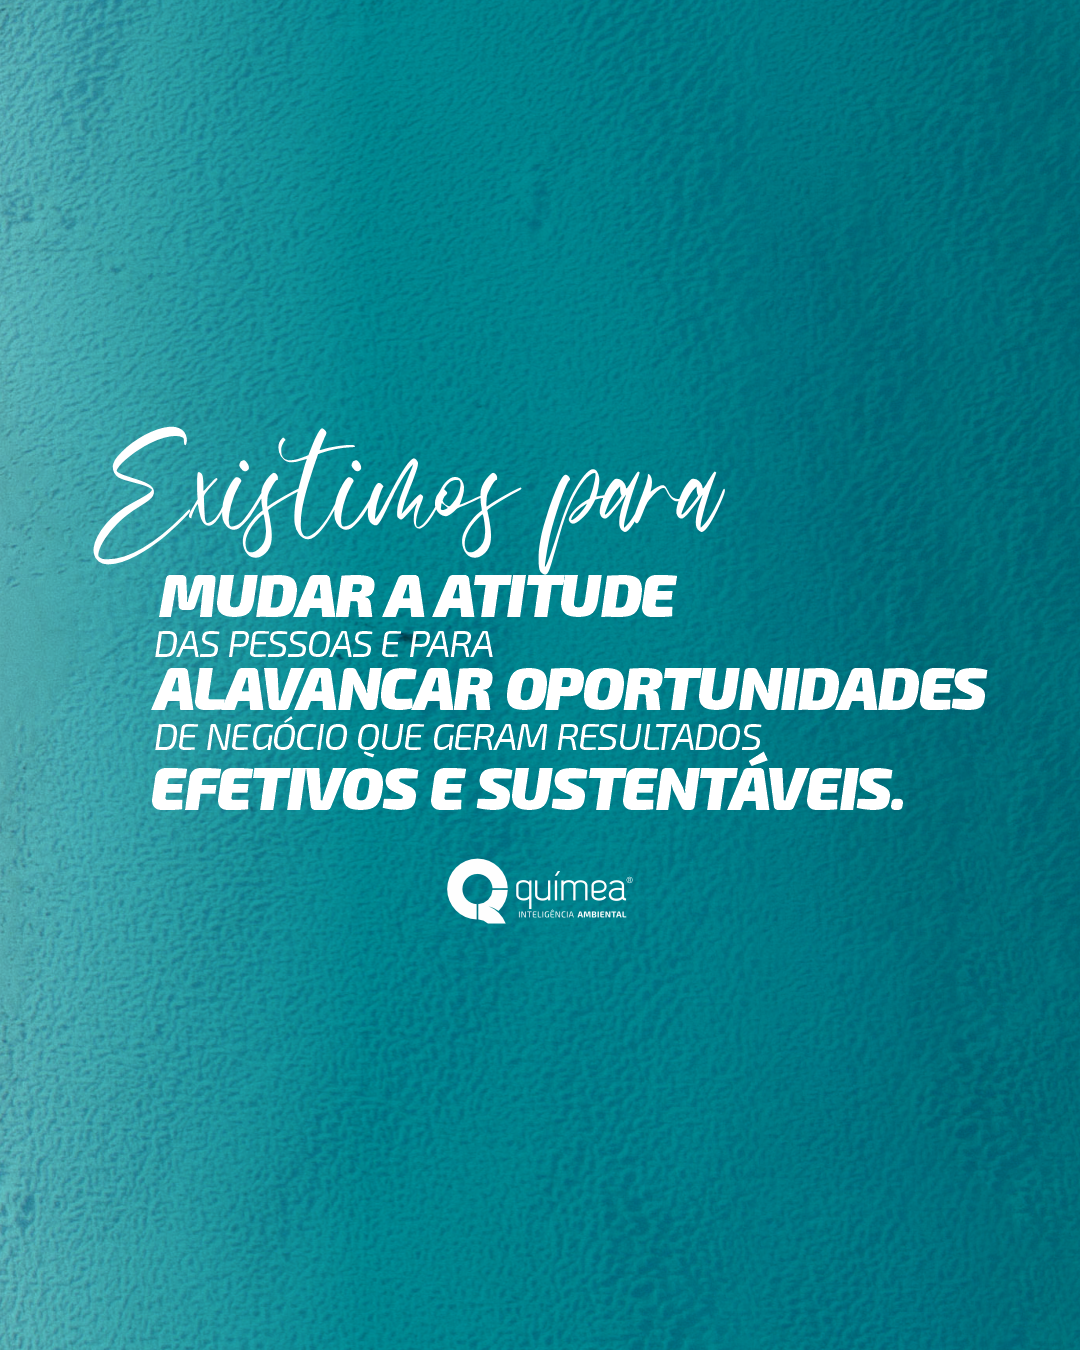 Somos a maior empresa de consultoria ambiental do Brasil